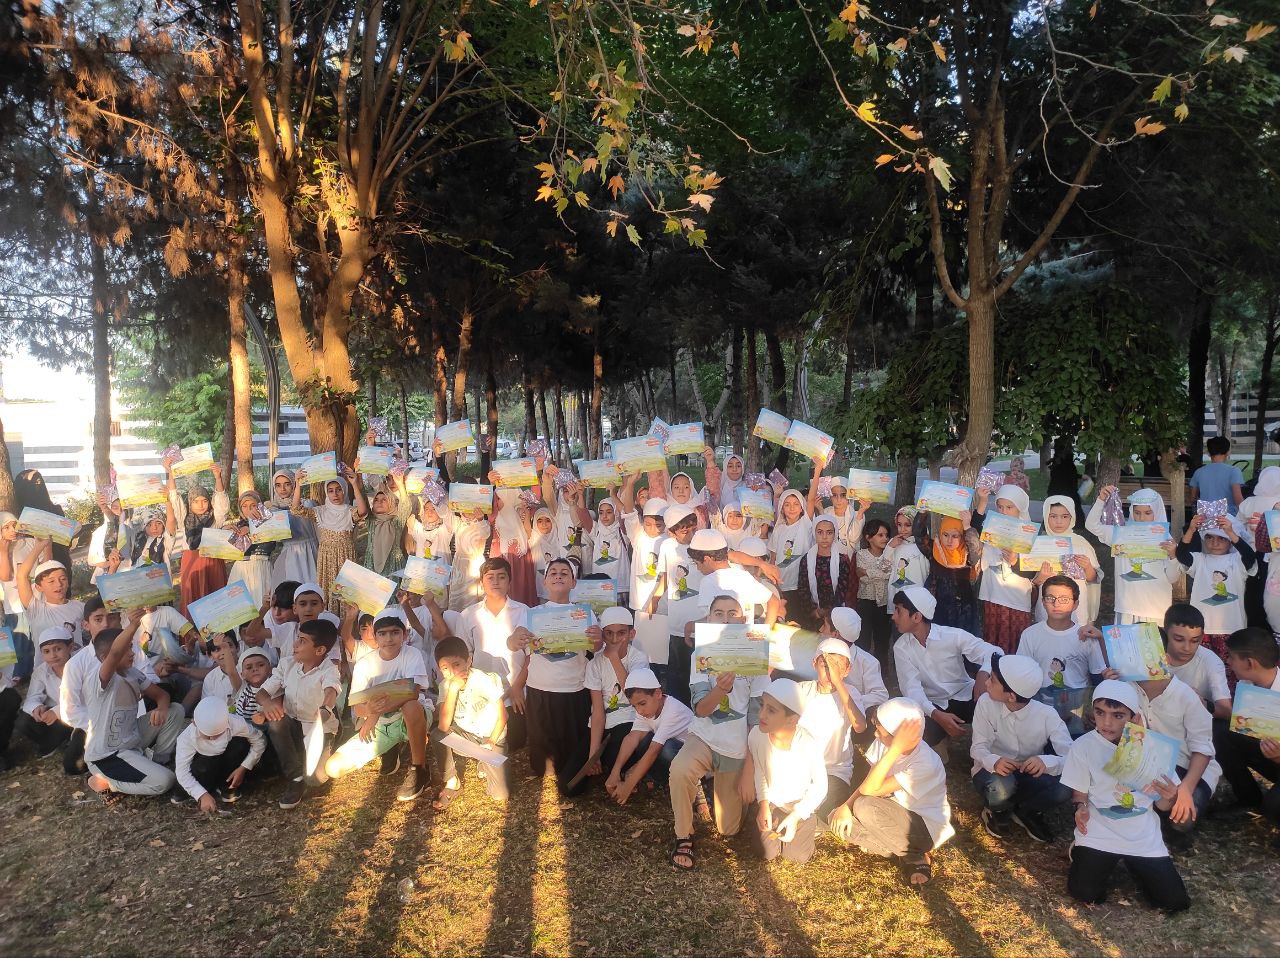 Kur'an Nesli Platformu tarafından Bismil'de gerçekleştirilen "Hayat Namazla Güzeldir" etkinliği kapsamında Millet Bahçesinde onlarca çocuk cemaatle namaz kıldı.